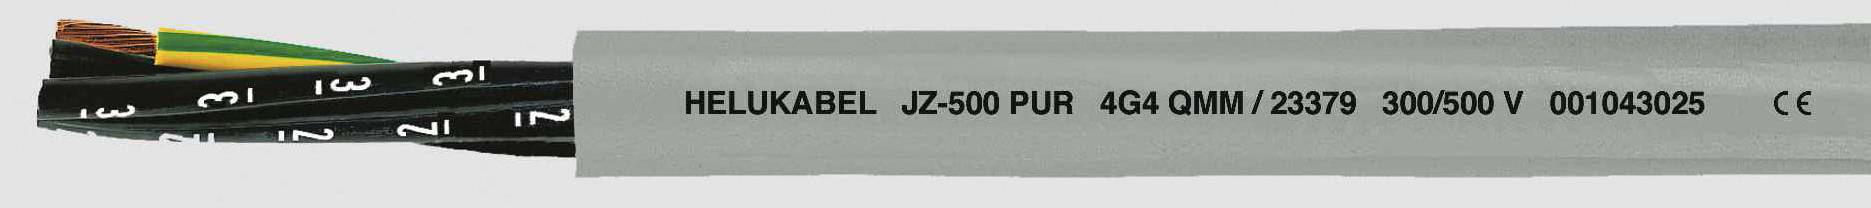 HELUKABEL JZ-500 PUR Steuerleitung 3 G 0.75 mm² Grau 23330 100 m